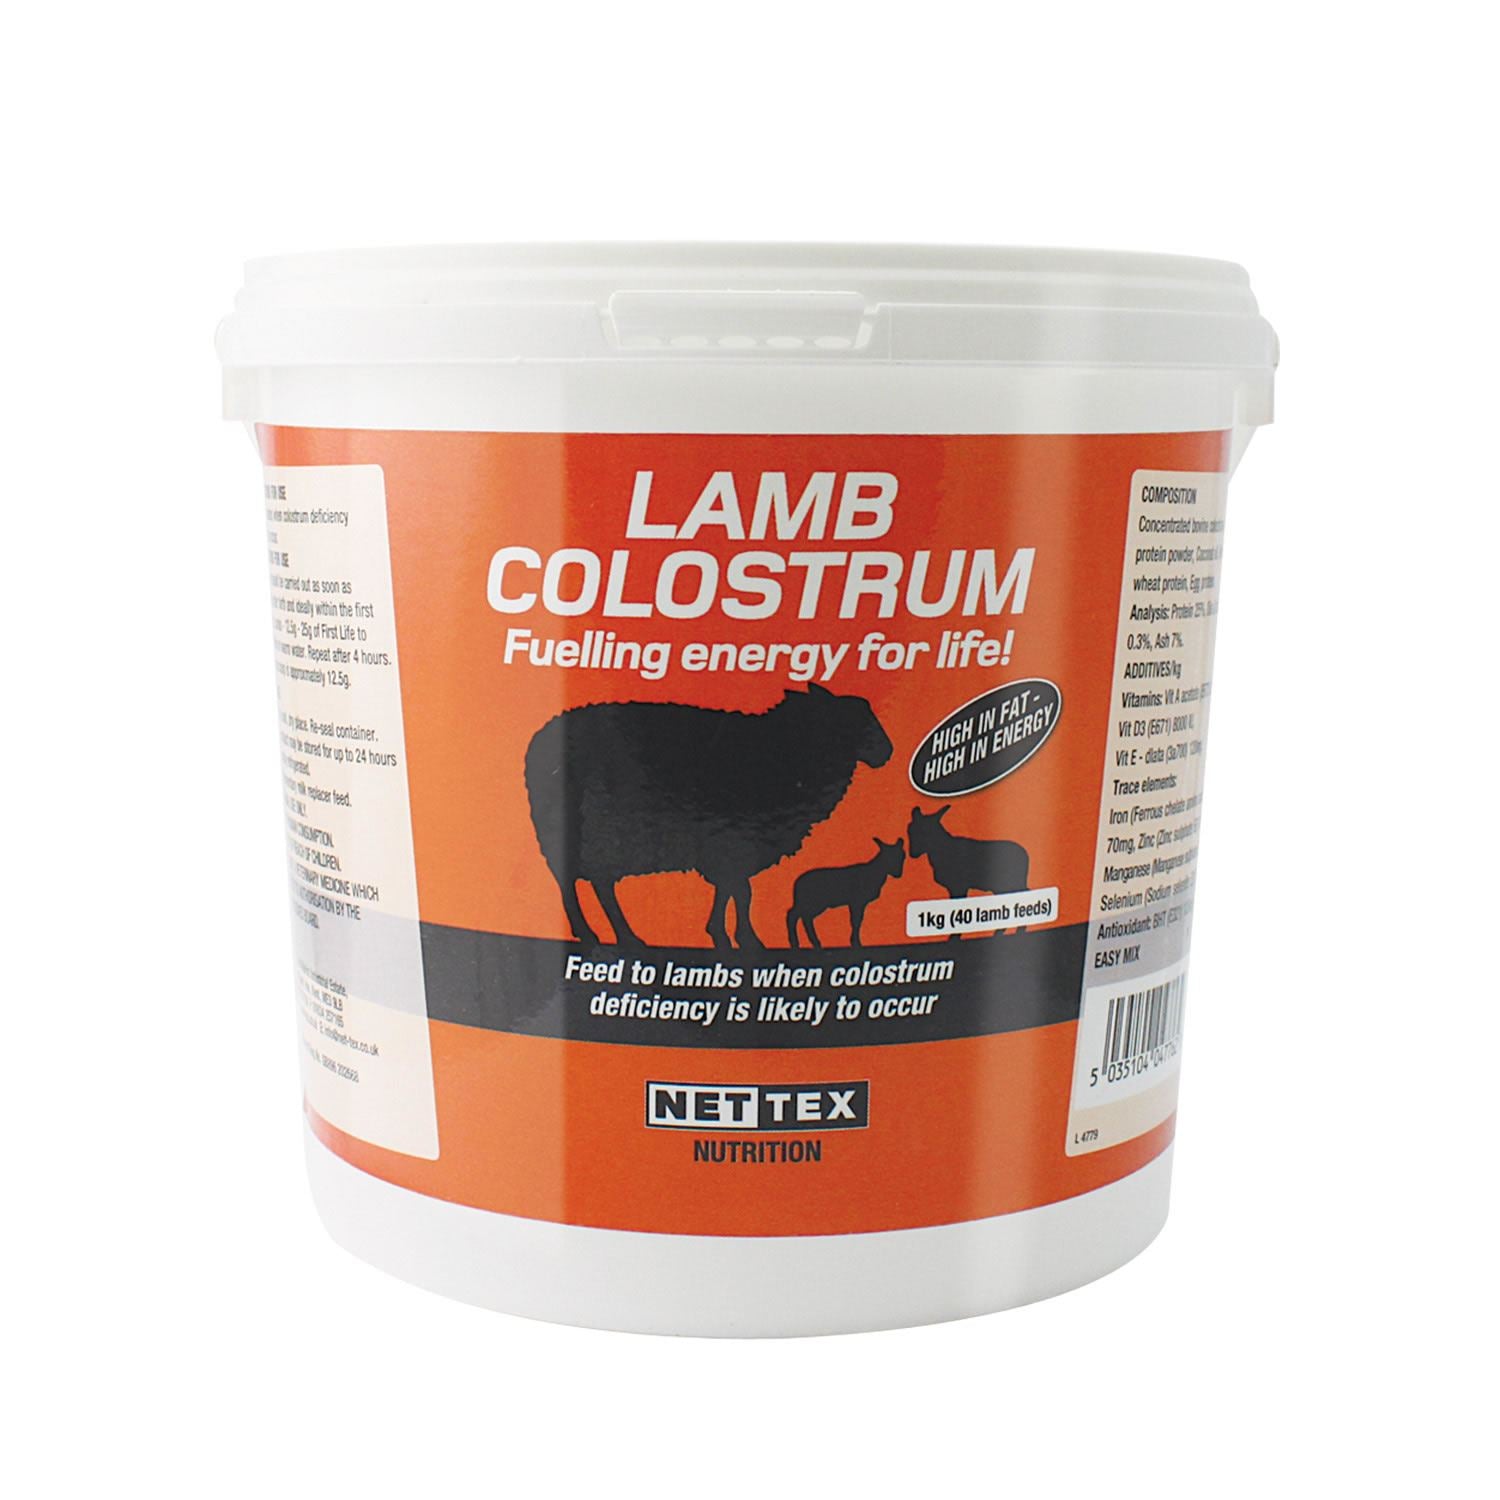 Nettex Lamb Colostrum - Just Horse Riders